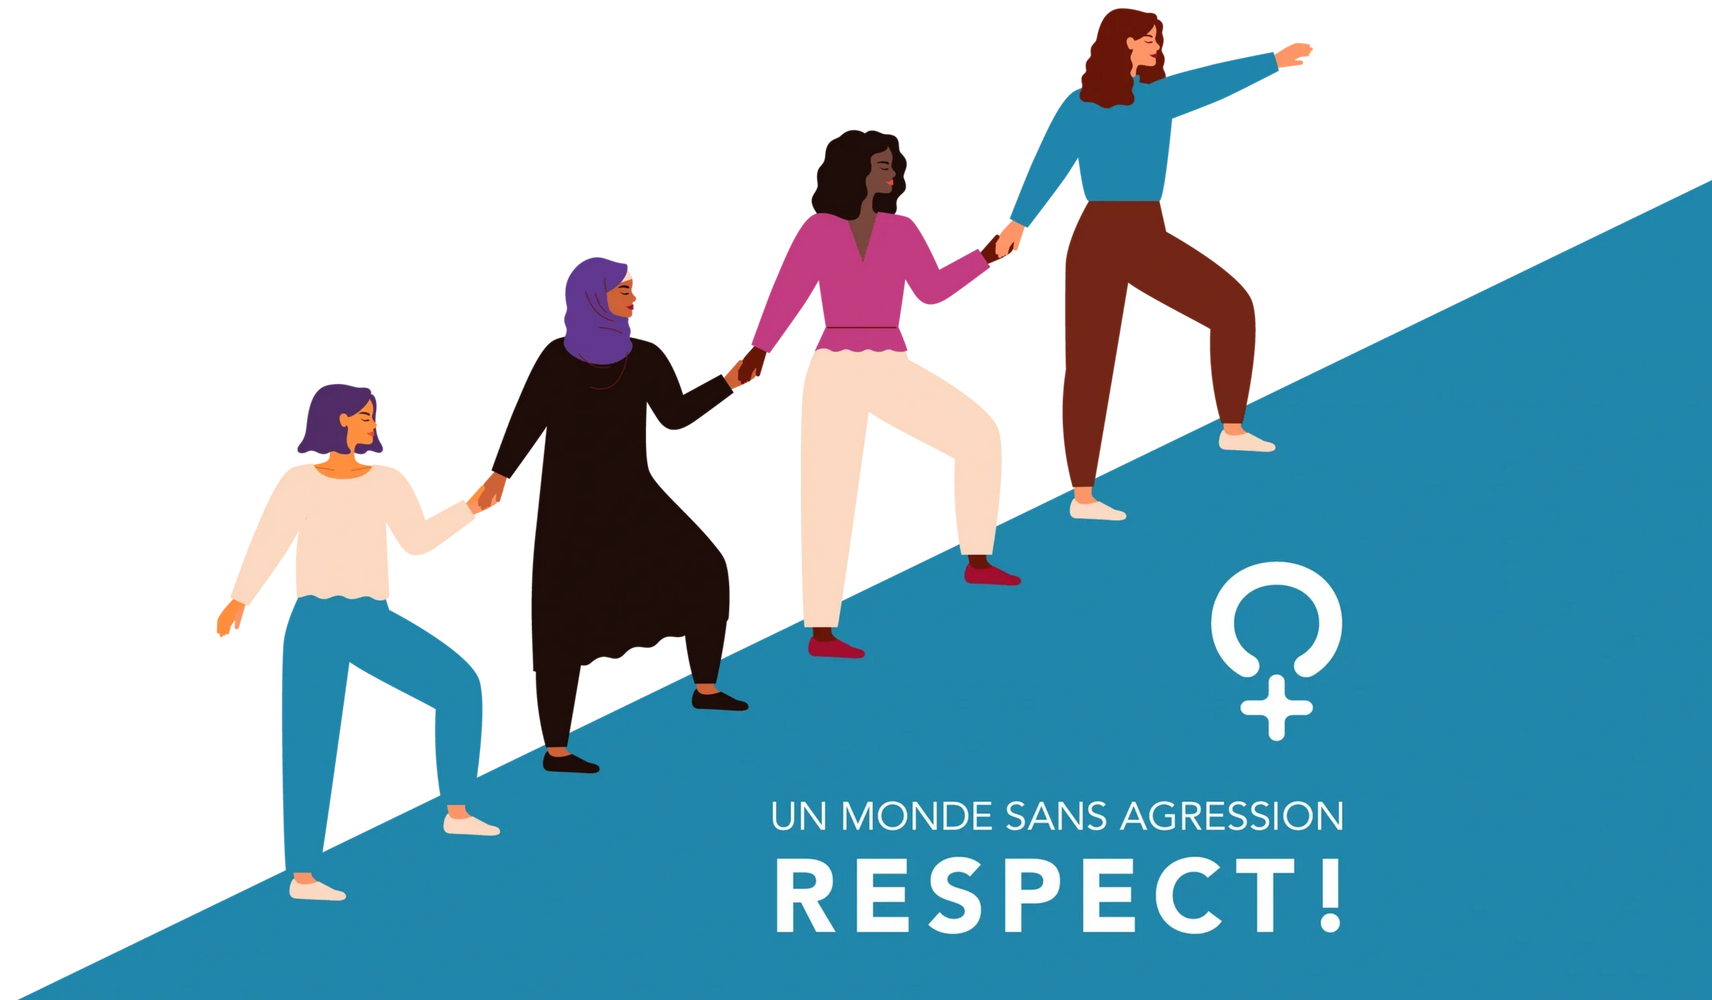 Un monde sana agression, RESPECT envers les femmes de toutes les nations.